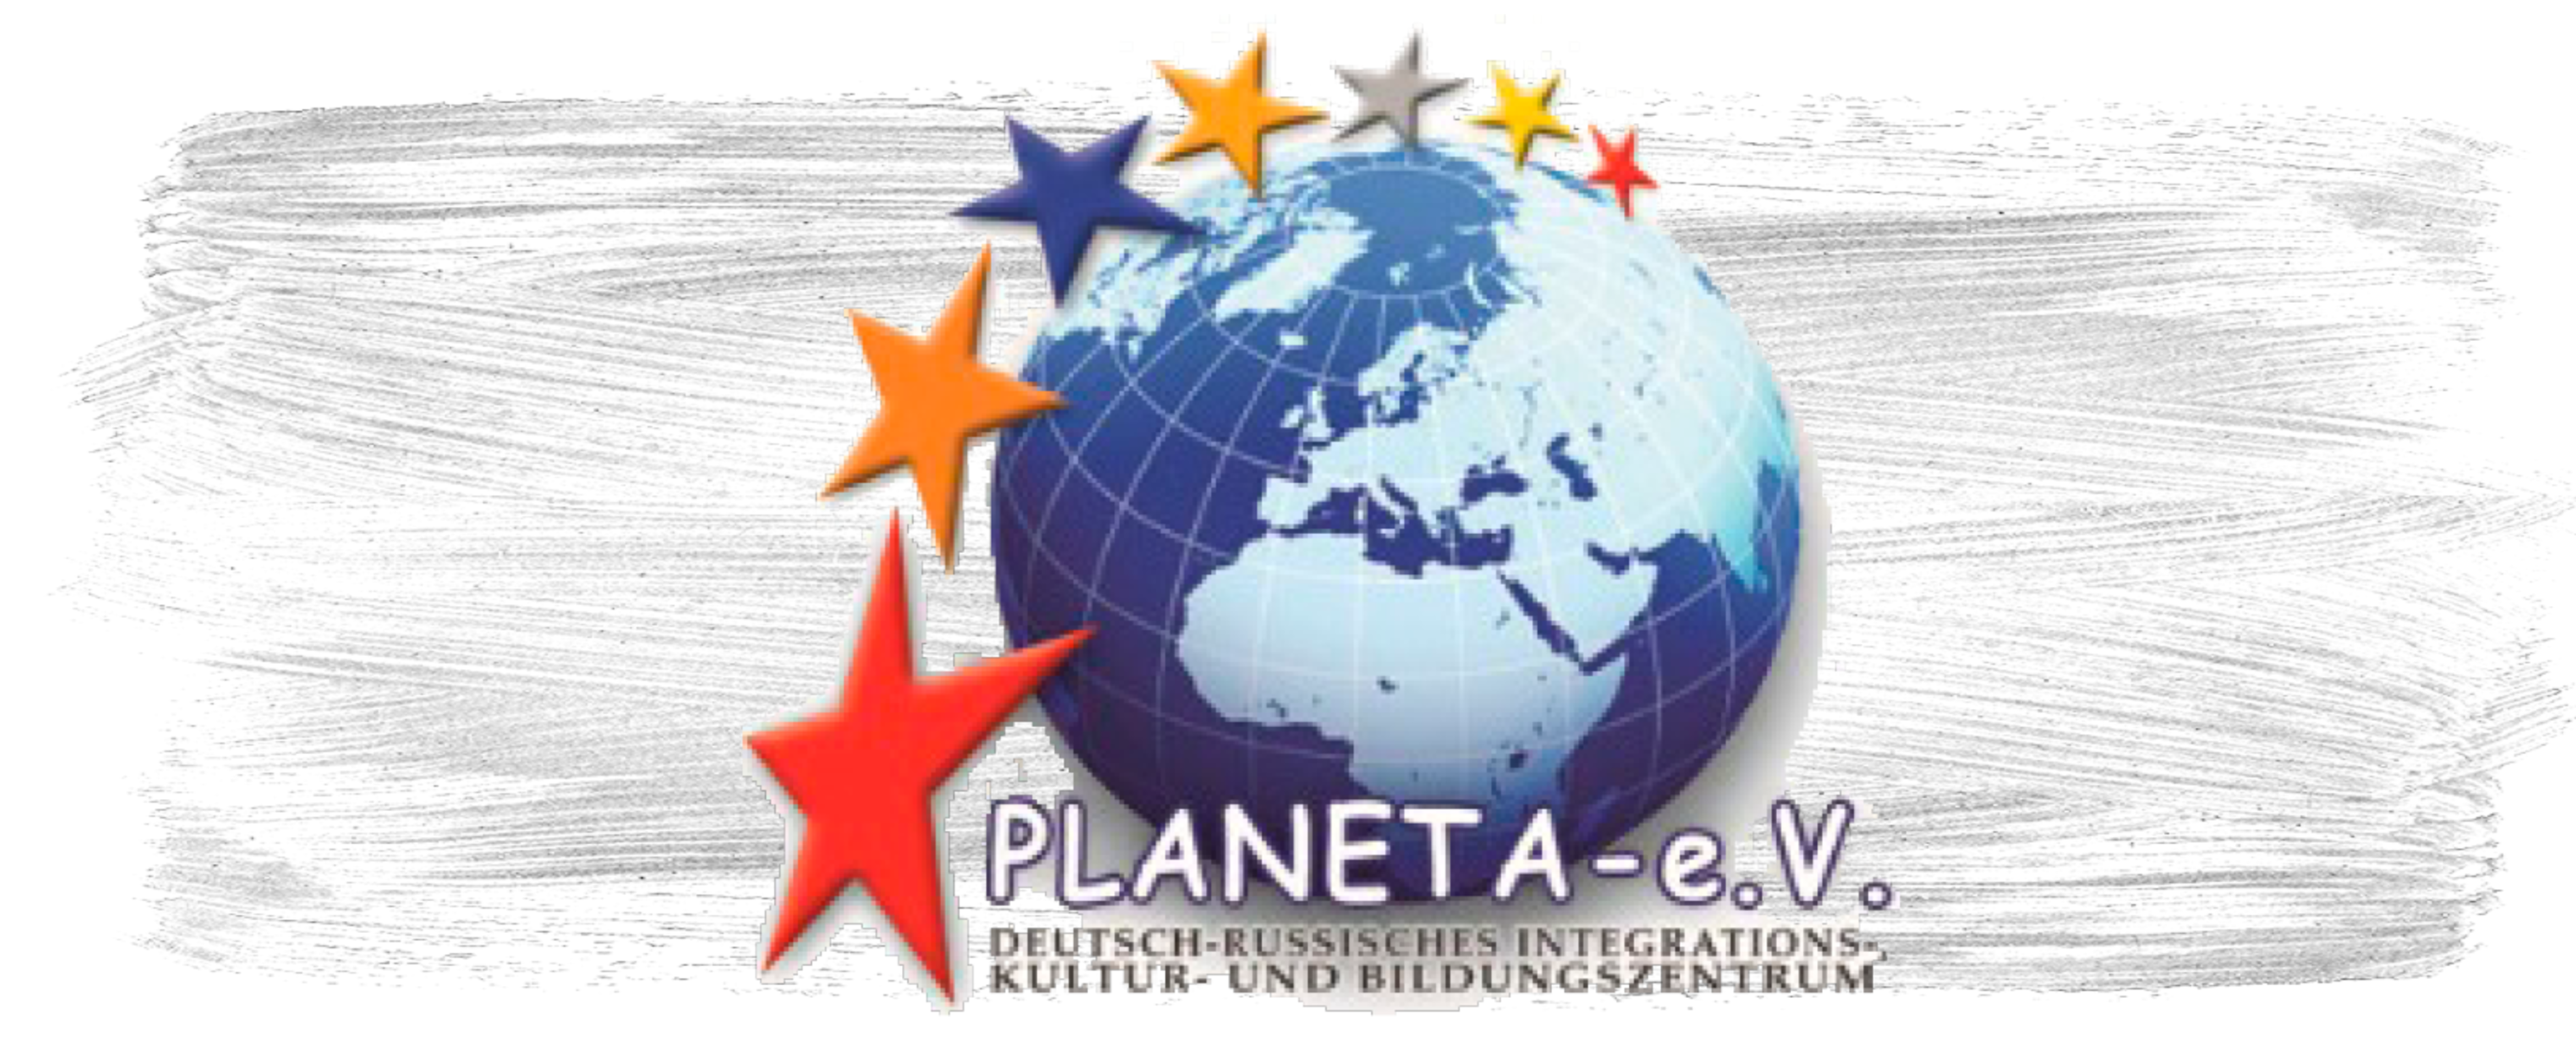 Planeta e.V. Deutsch-Russisches Integrations- und Bildungszentrum